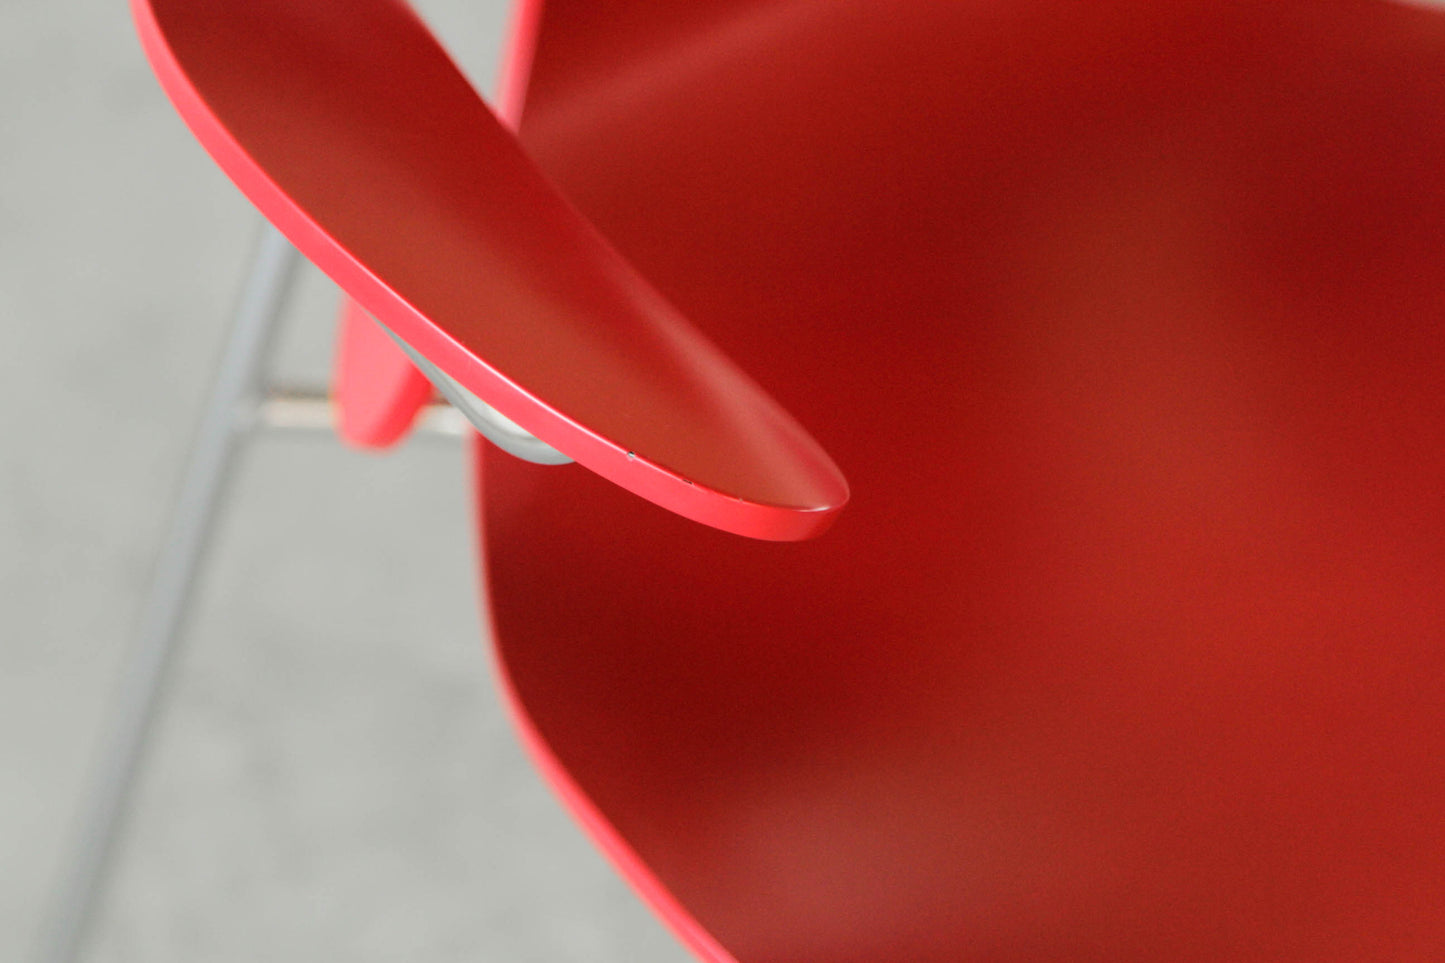 Arne Jacobsen "seagull" chair. In white.